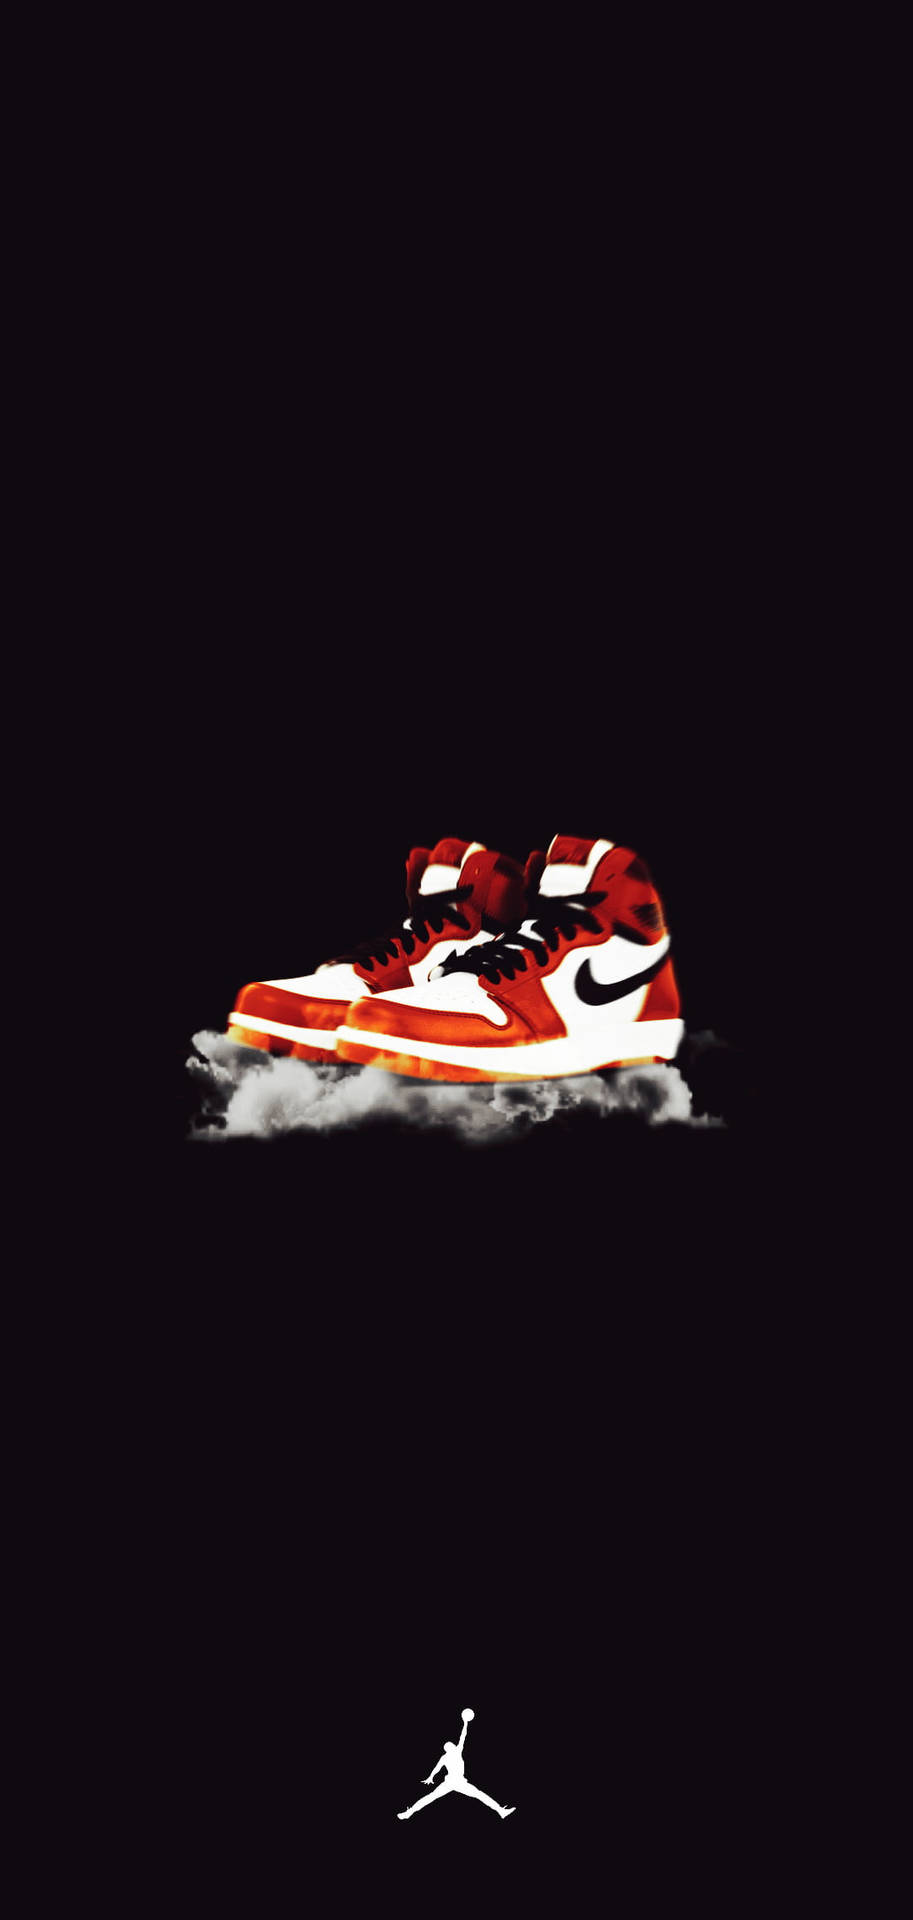 Chic Image Of Nike Jordan 1 Wallpaper